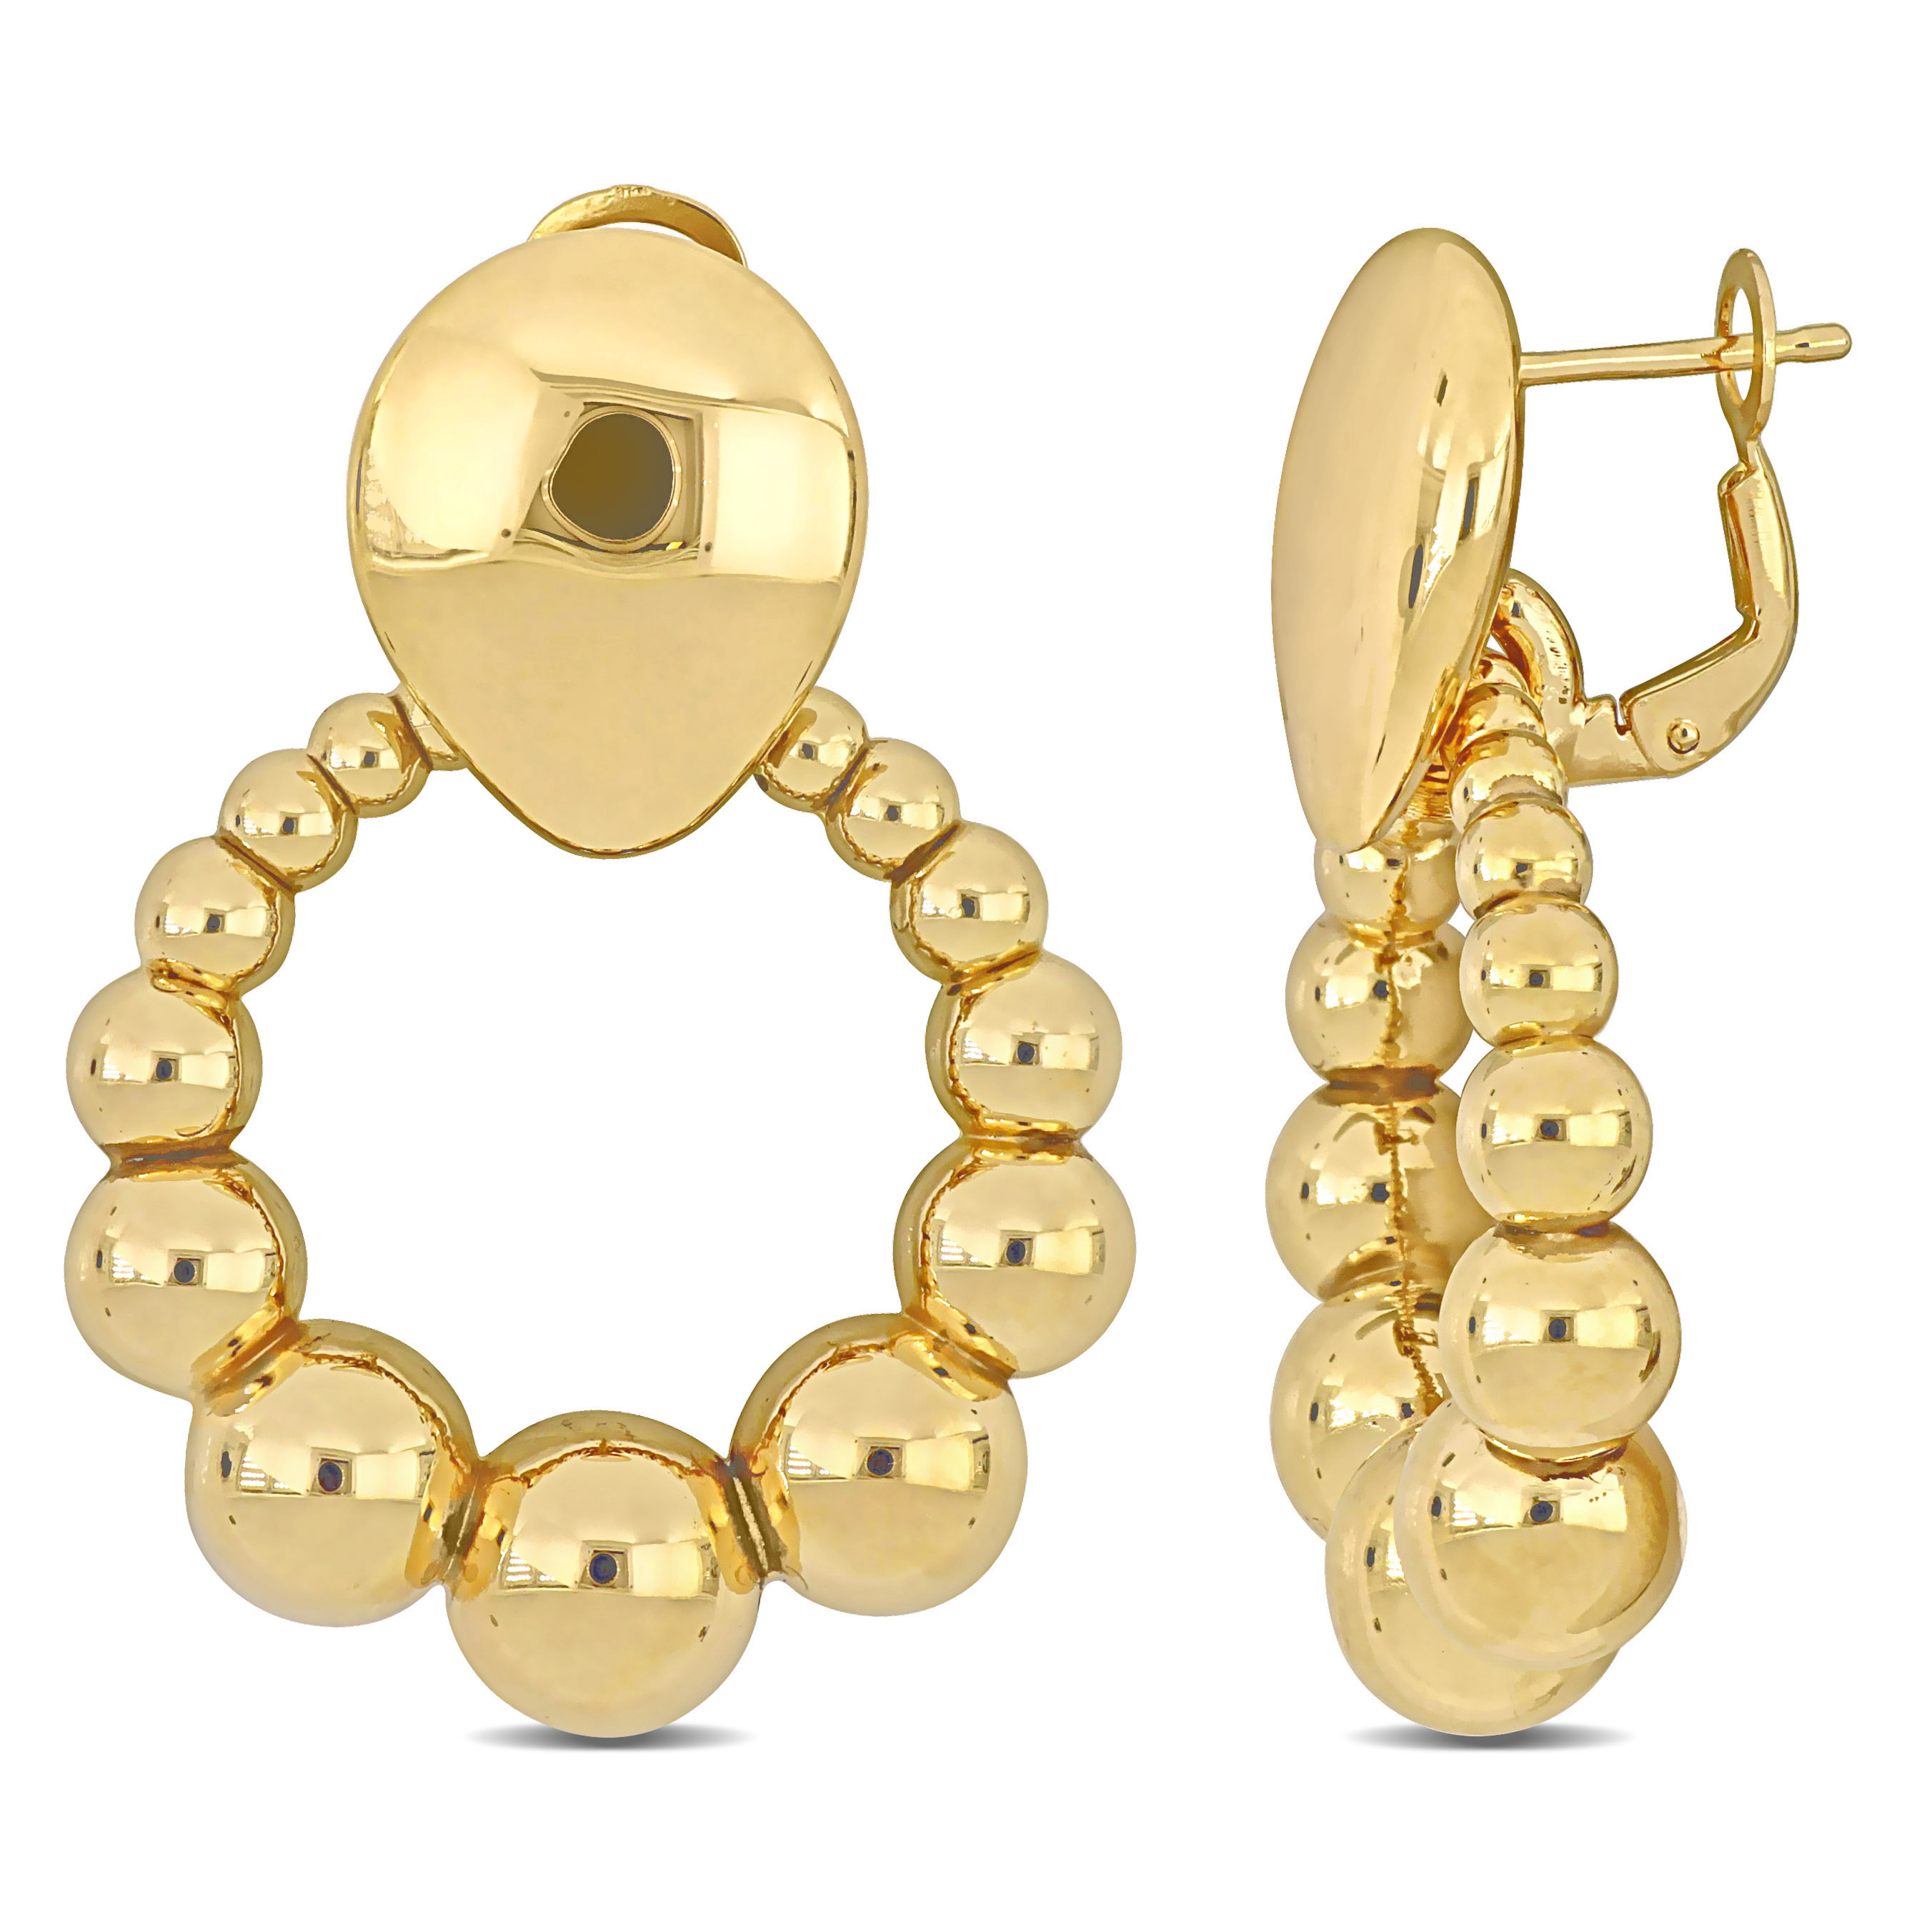 Beaded Open Teardrop Earrings in 14k Yellow Gold